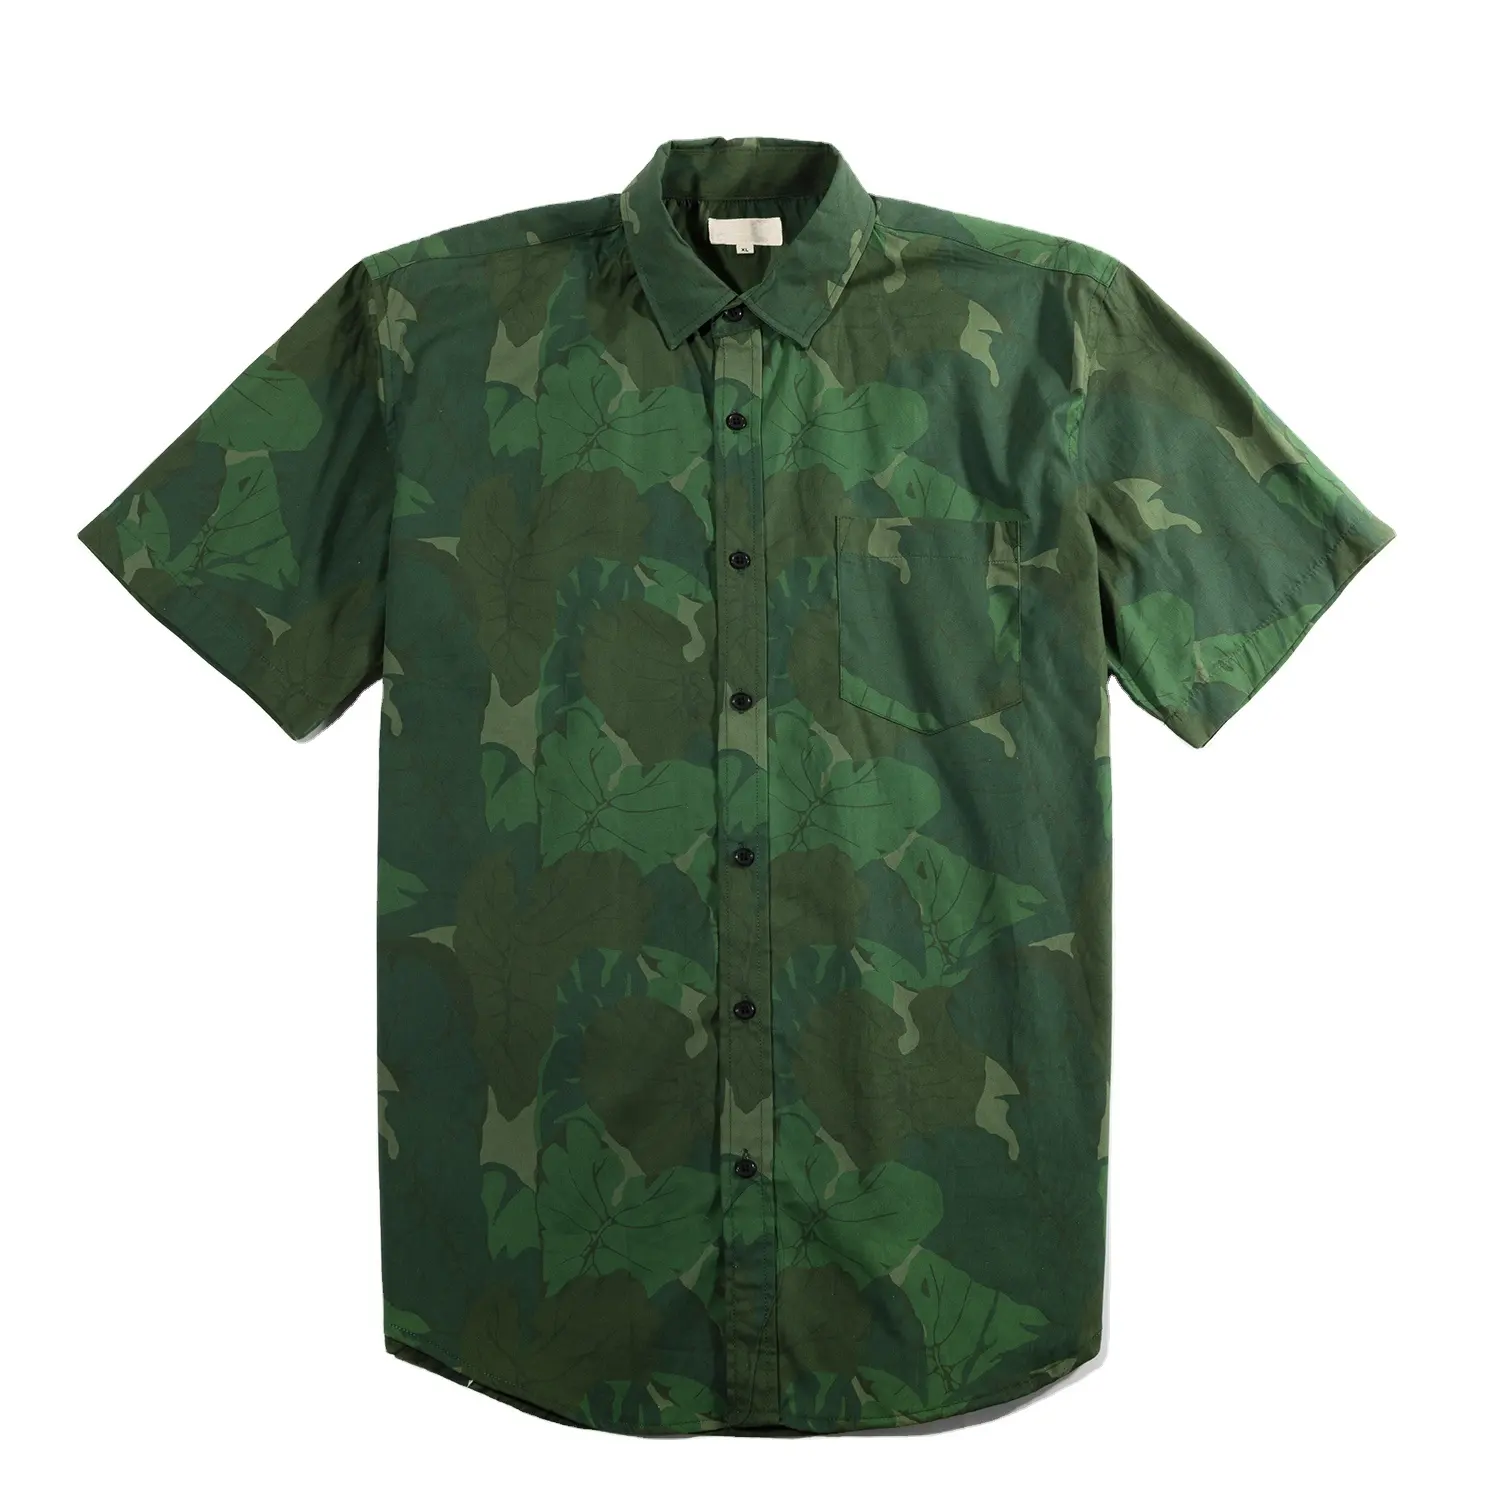 Summer Printed Mens Shirt Casual Short Sleeves Hawaiian Green Pattern Aloha Shirt